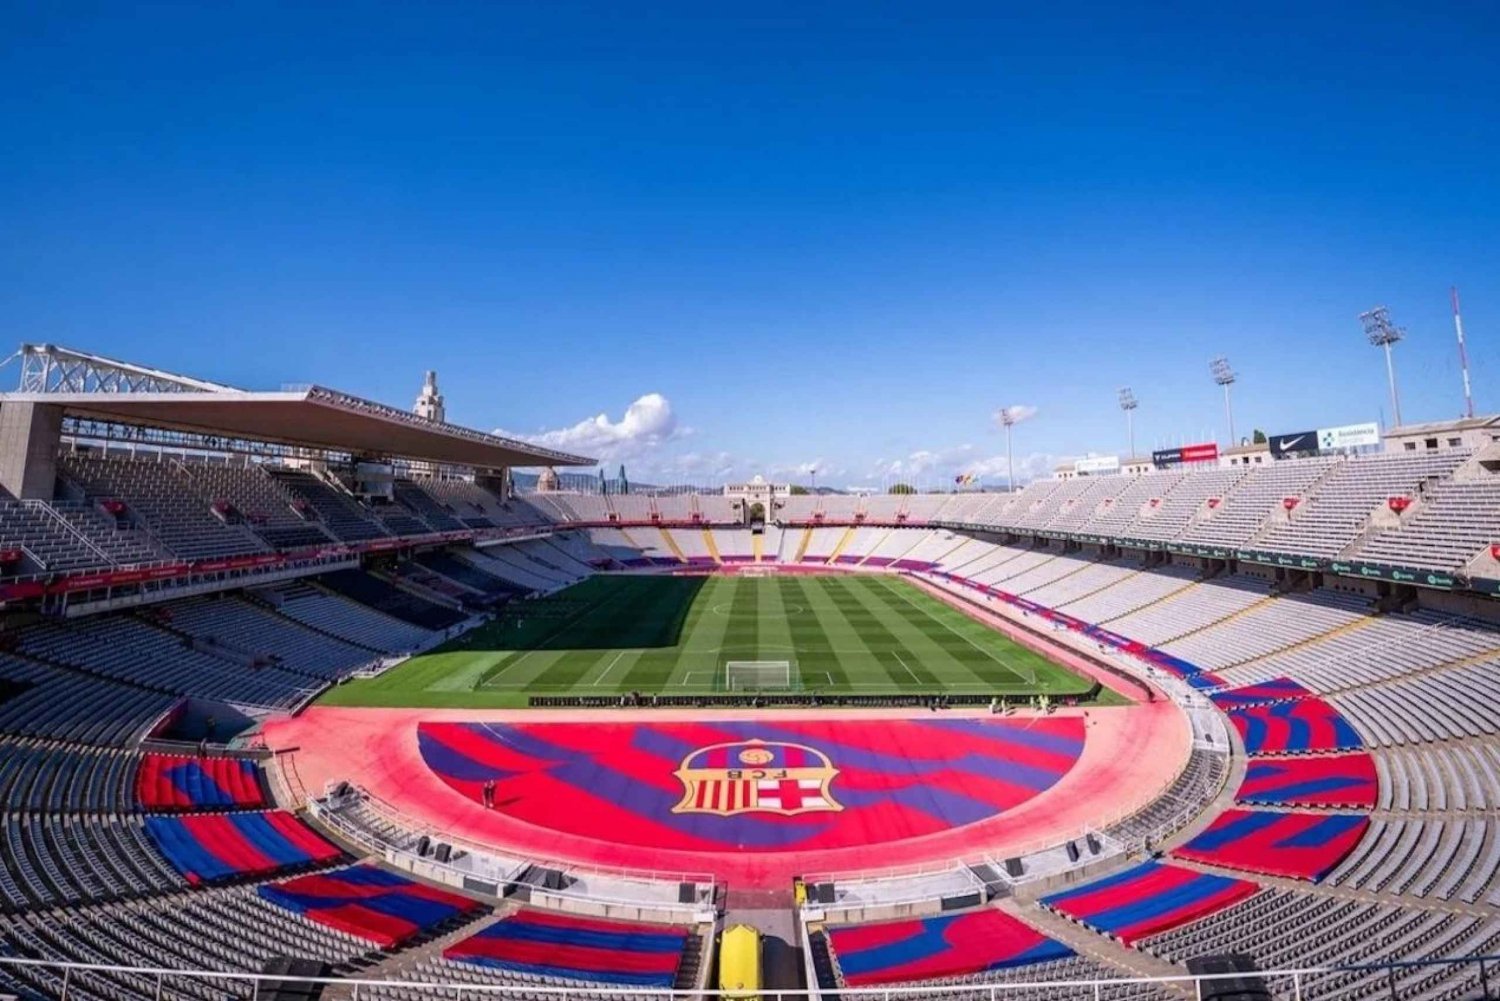 Barcelona: Wycieczka w dniu meczu FC Barcelona na Stadionie Olimpijskim